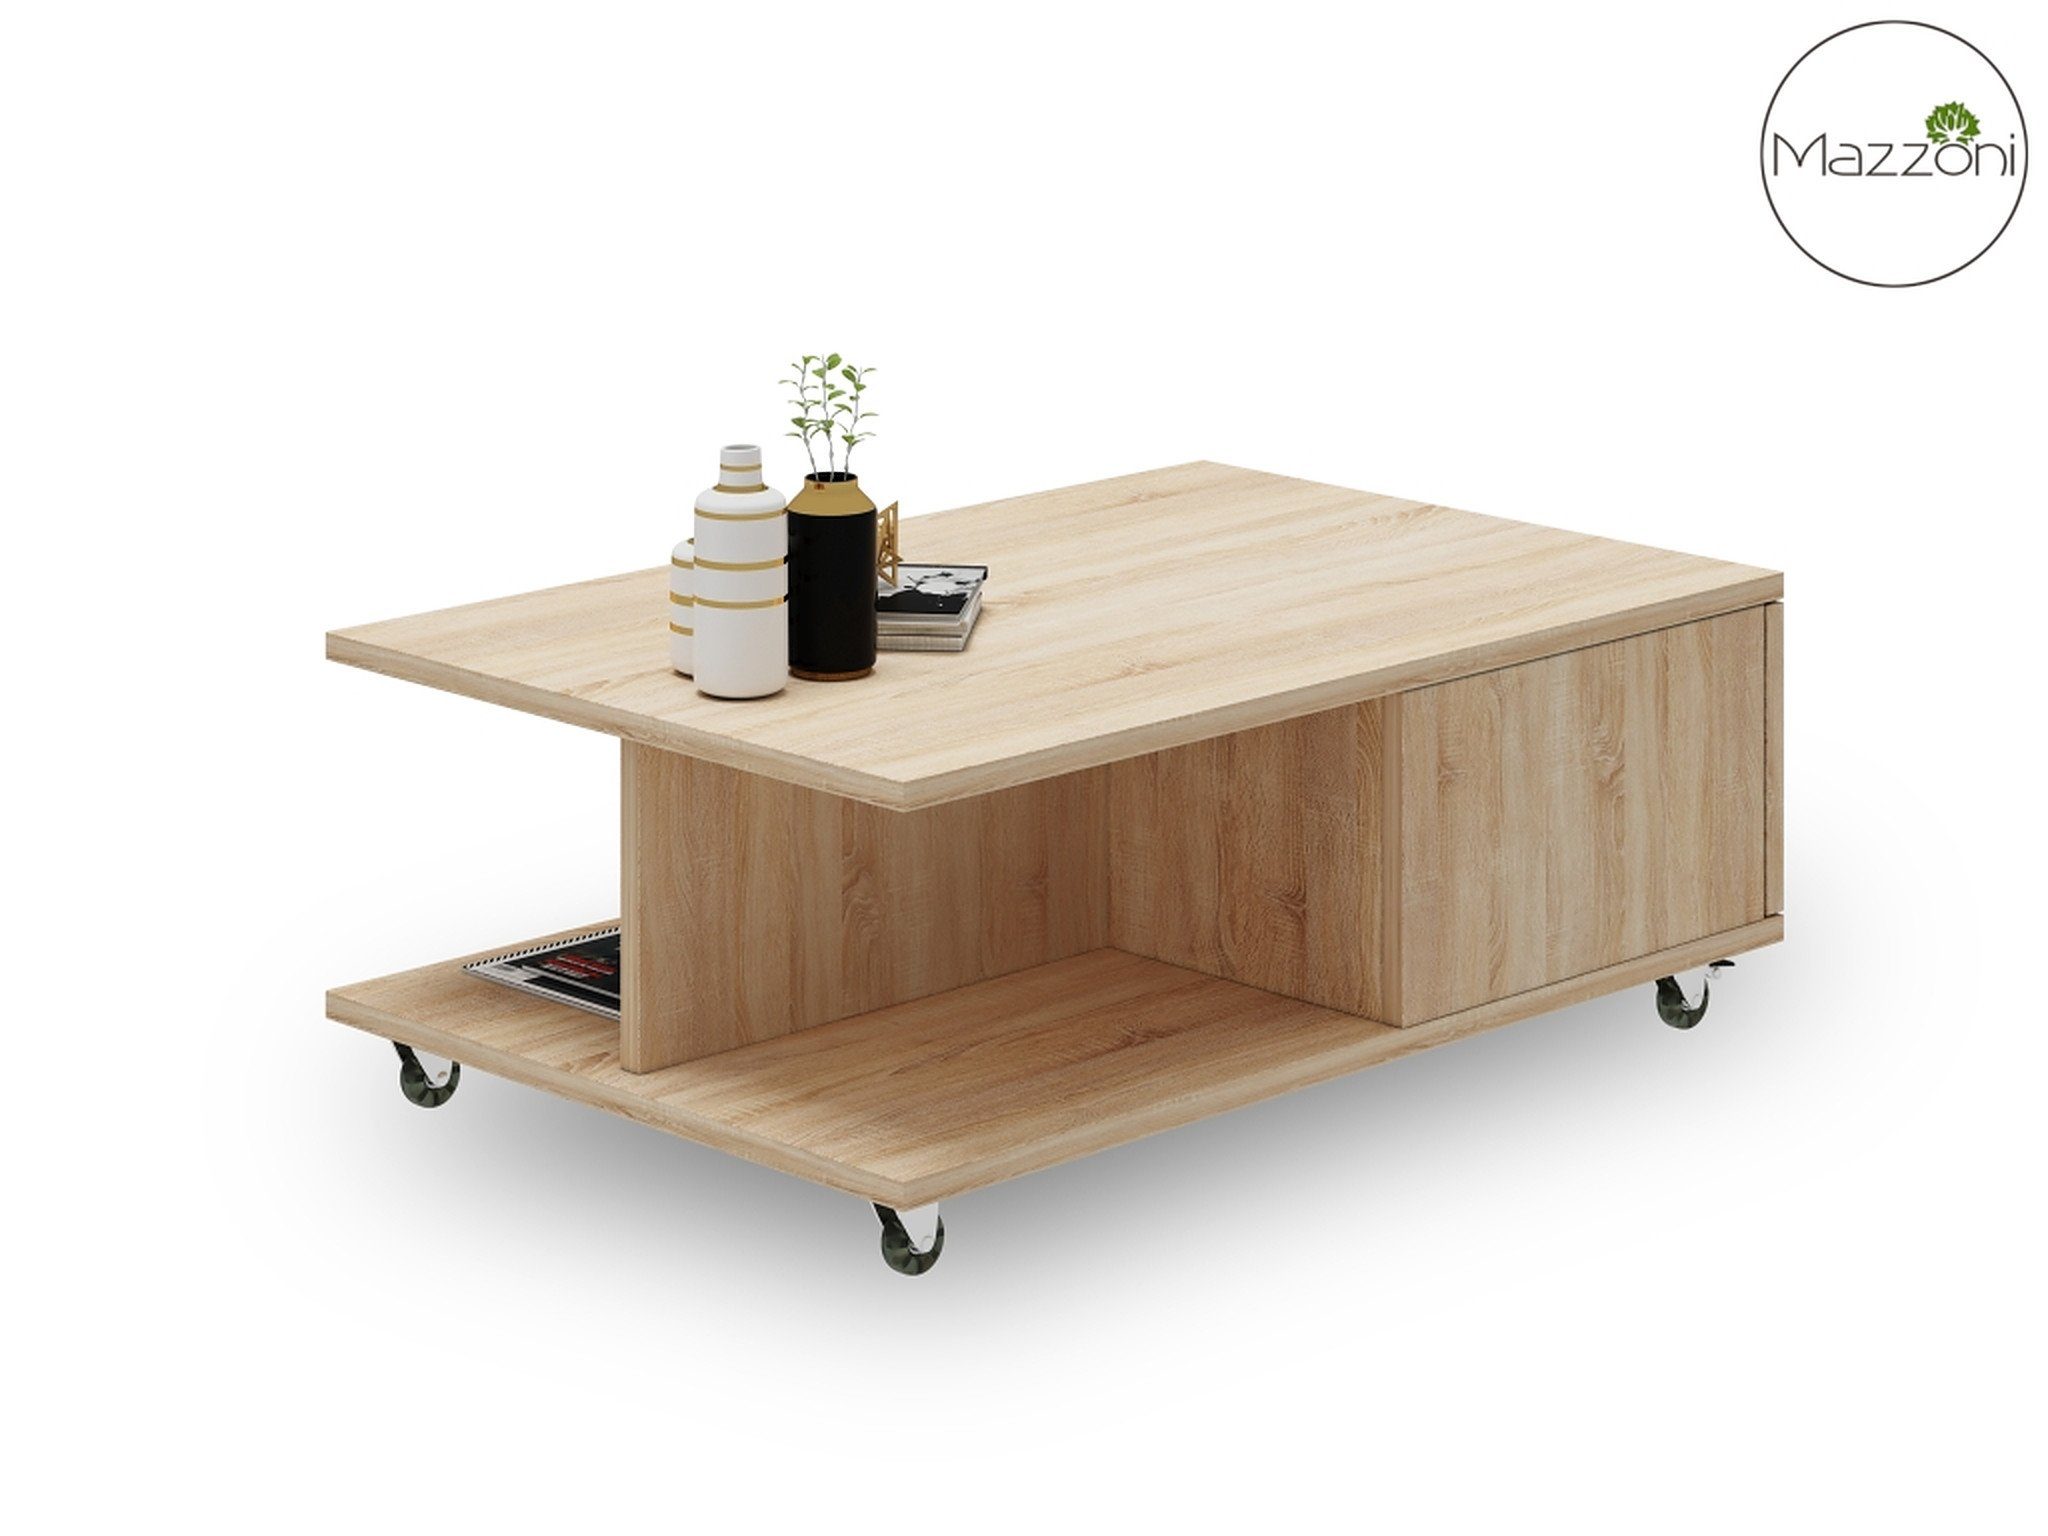 90x60x38cm mit Mazzoni Tisch Sonoma Wohnzimmertisch Eiche Design Vienna Rollen Couchtisch